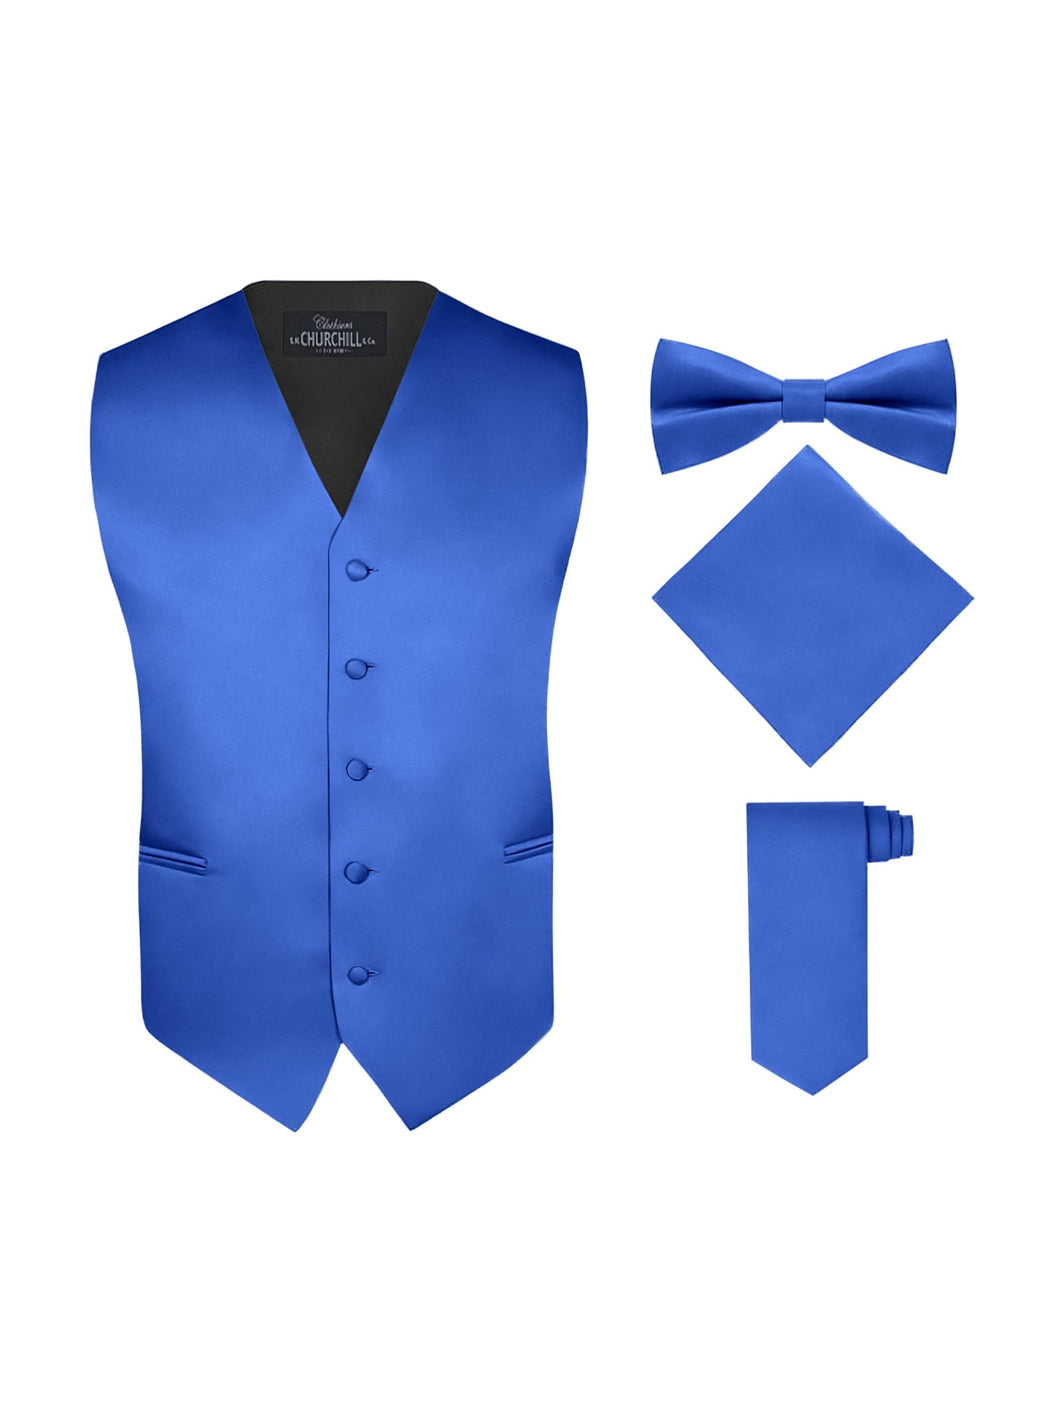 S.H. Churchill & Co. Men's 4 Piece Royal Blue Vest Set, with Bow Tie, Neck Tie & Pocket Hankie